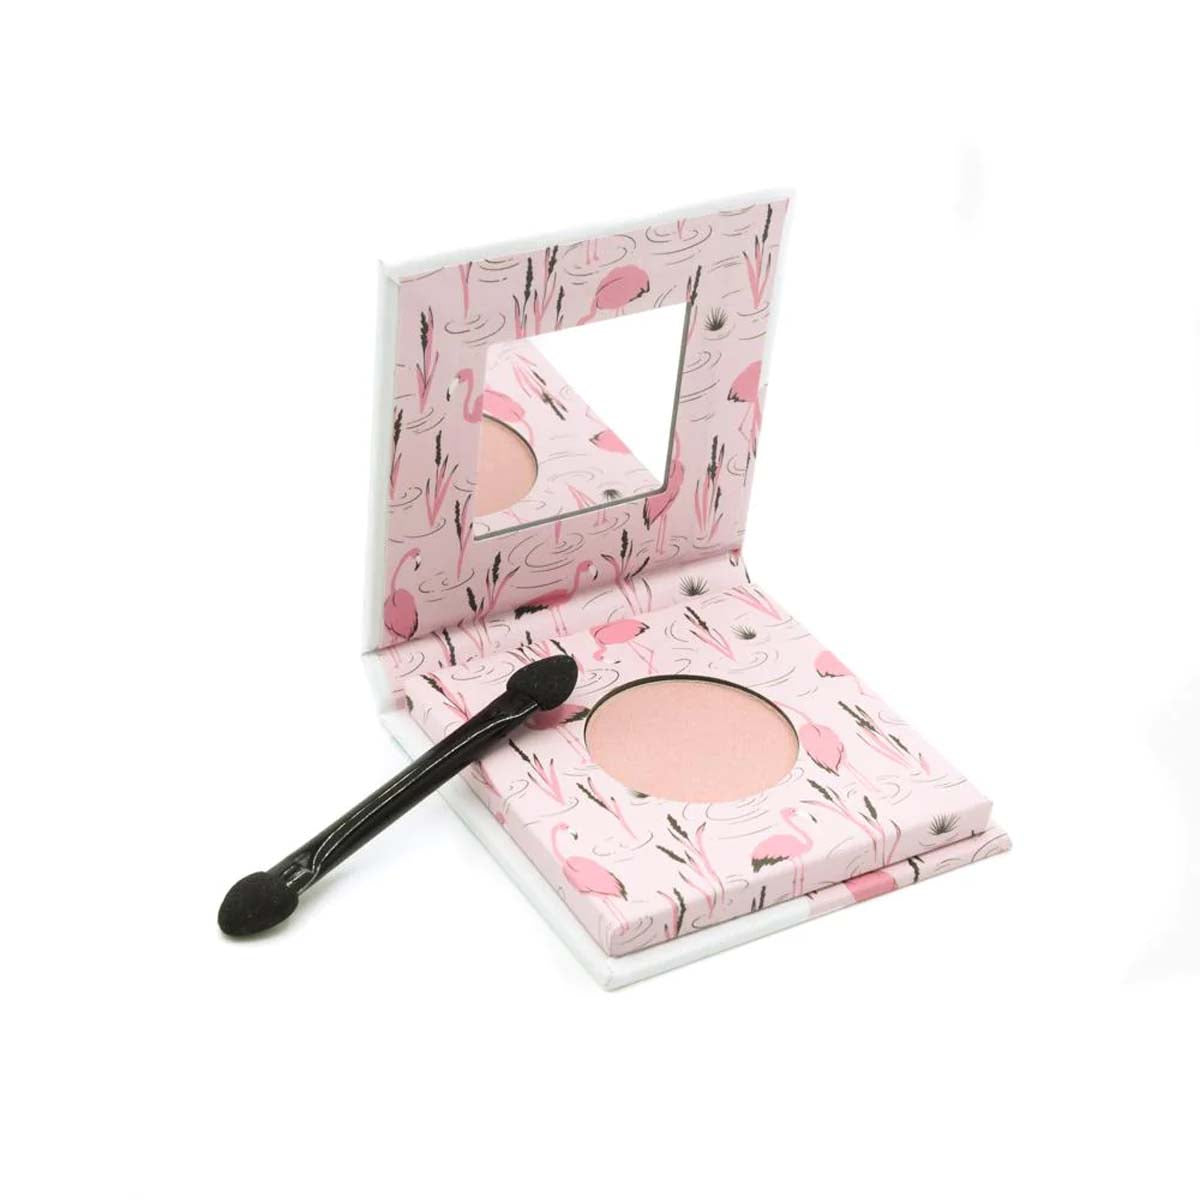 Veilig make-uppen kan met de vegan Mineral oogschaduw fabulous flamingo van het merk Toot! Verpakt in een vrolijk en luxe doosje, met handig spiegeltje en applicator. Ook in andere kleuren te koop. Mooie kindermake-up. VanZus